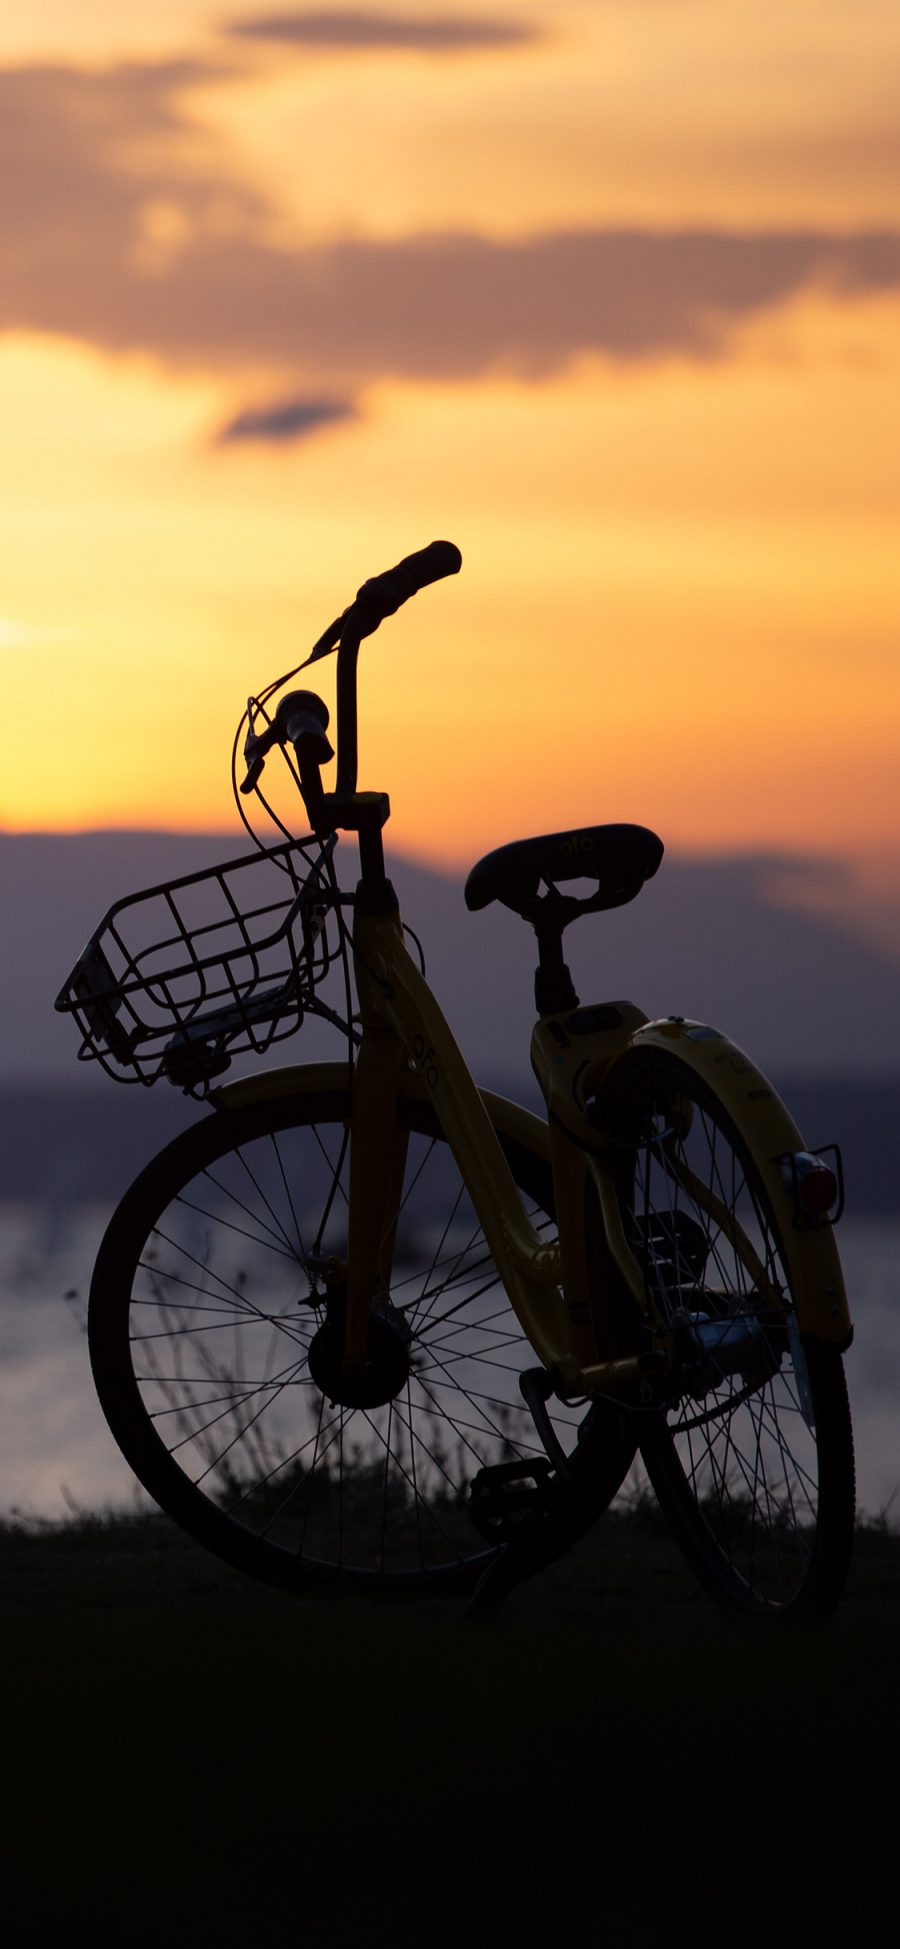 [2436×1125]郊外 单车 落日 夕阳美景 苹果手机壁纸图片